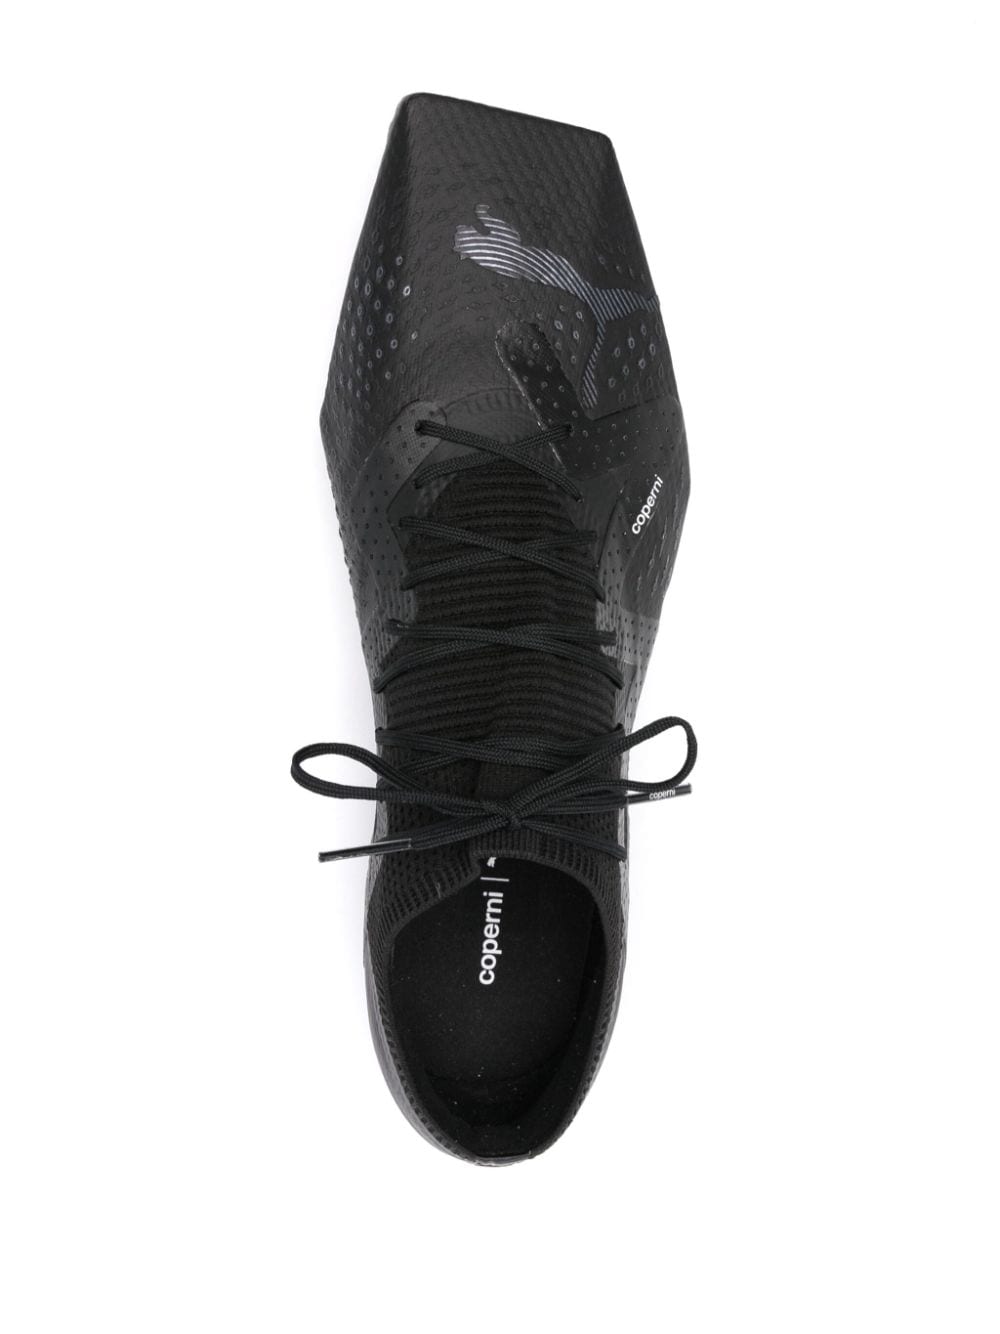 Coperni x Puma 90SQR sneakers Black